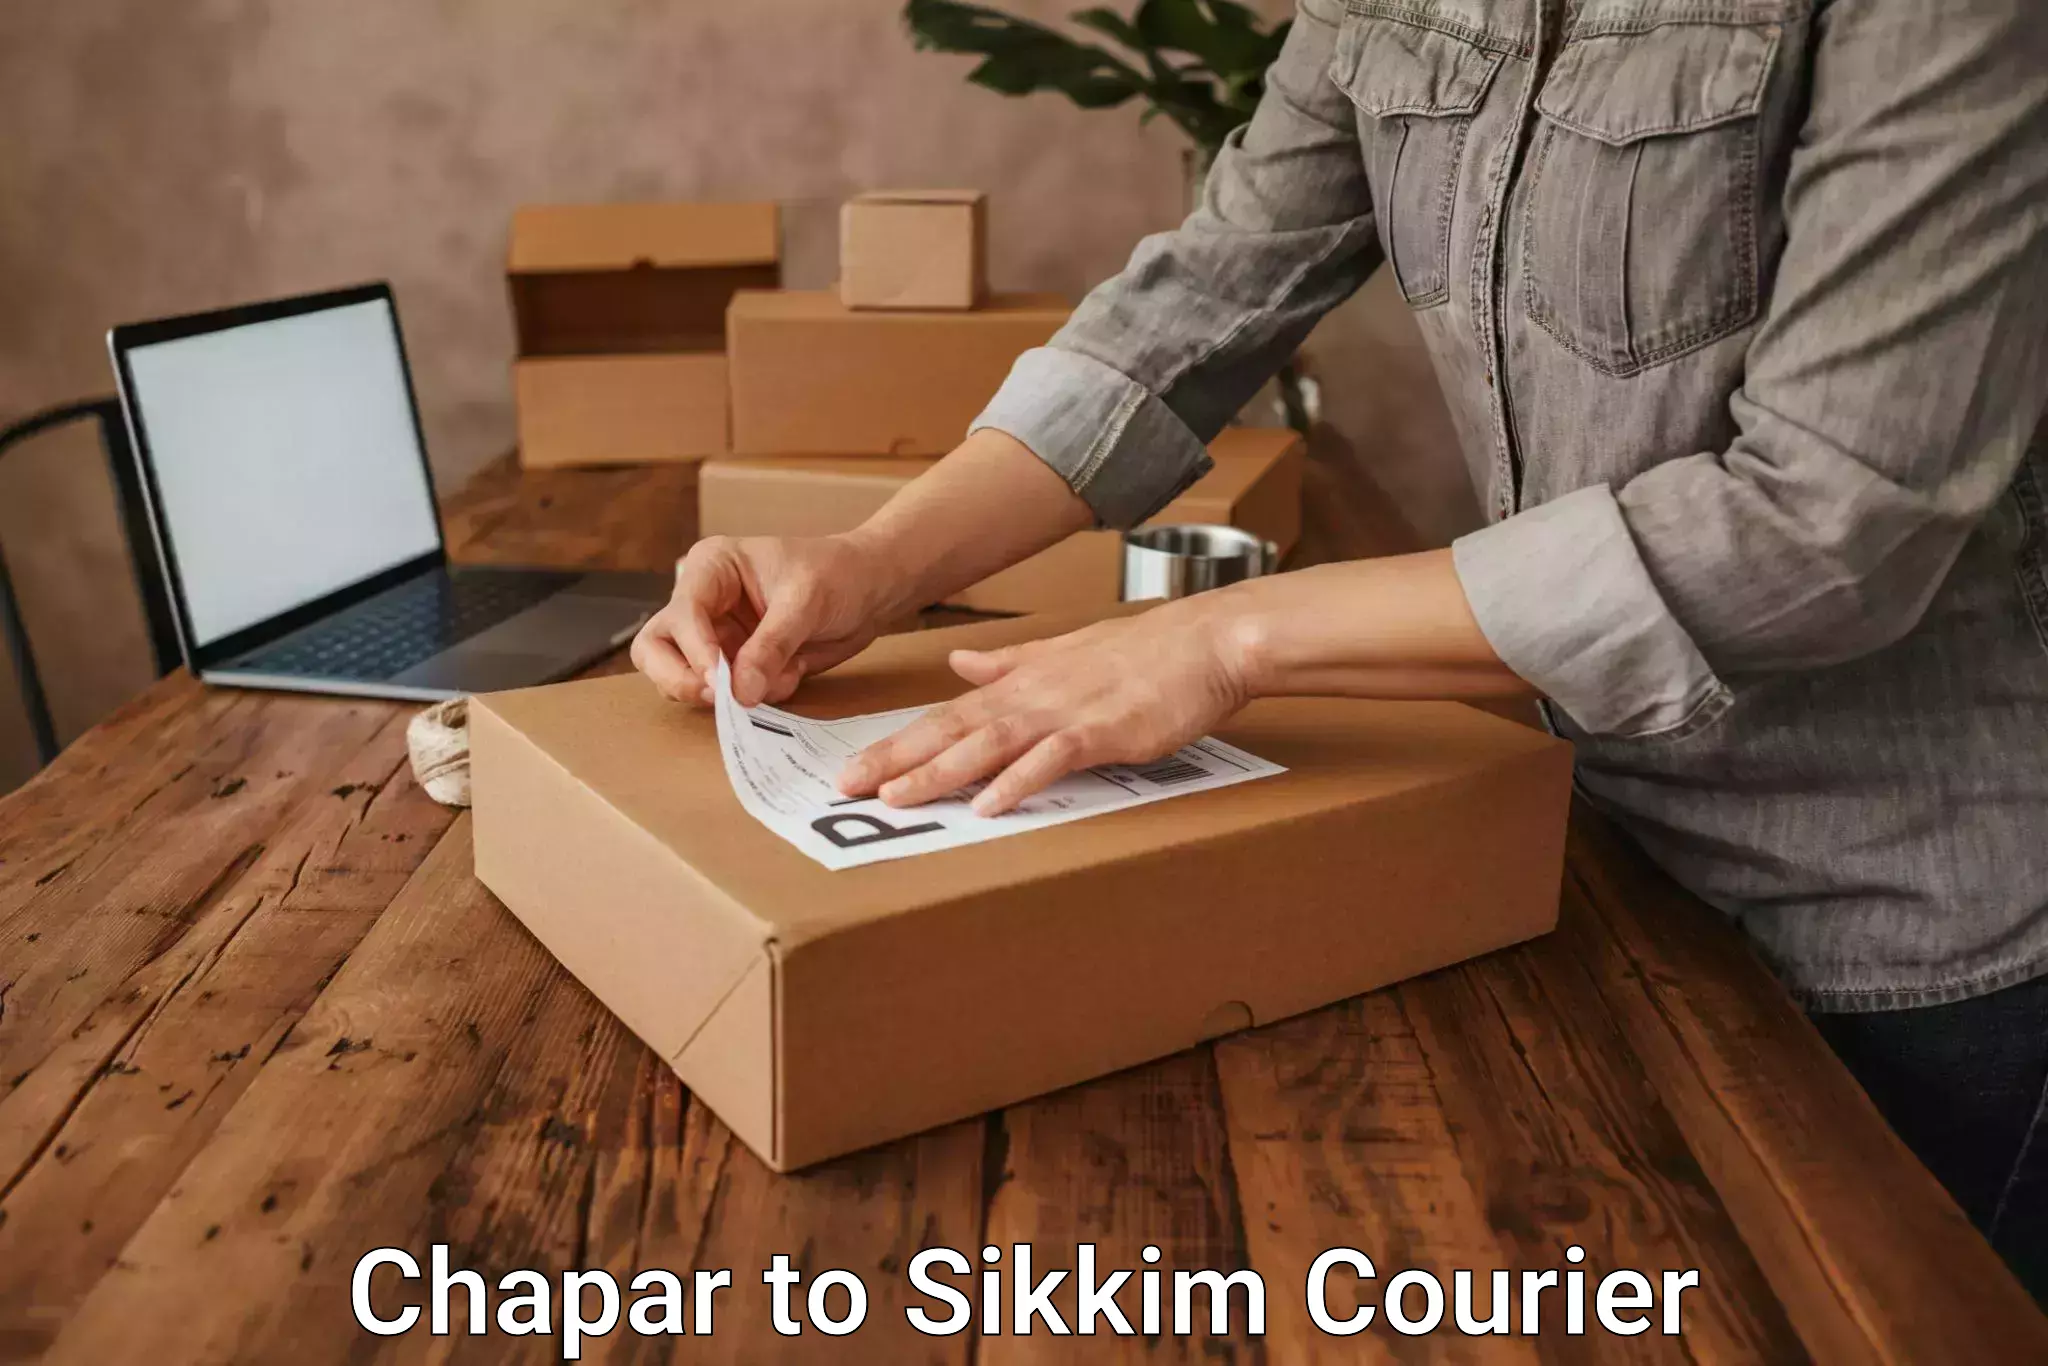 24/7 courier service Chapar to Sikkim